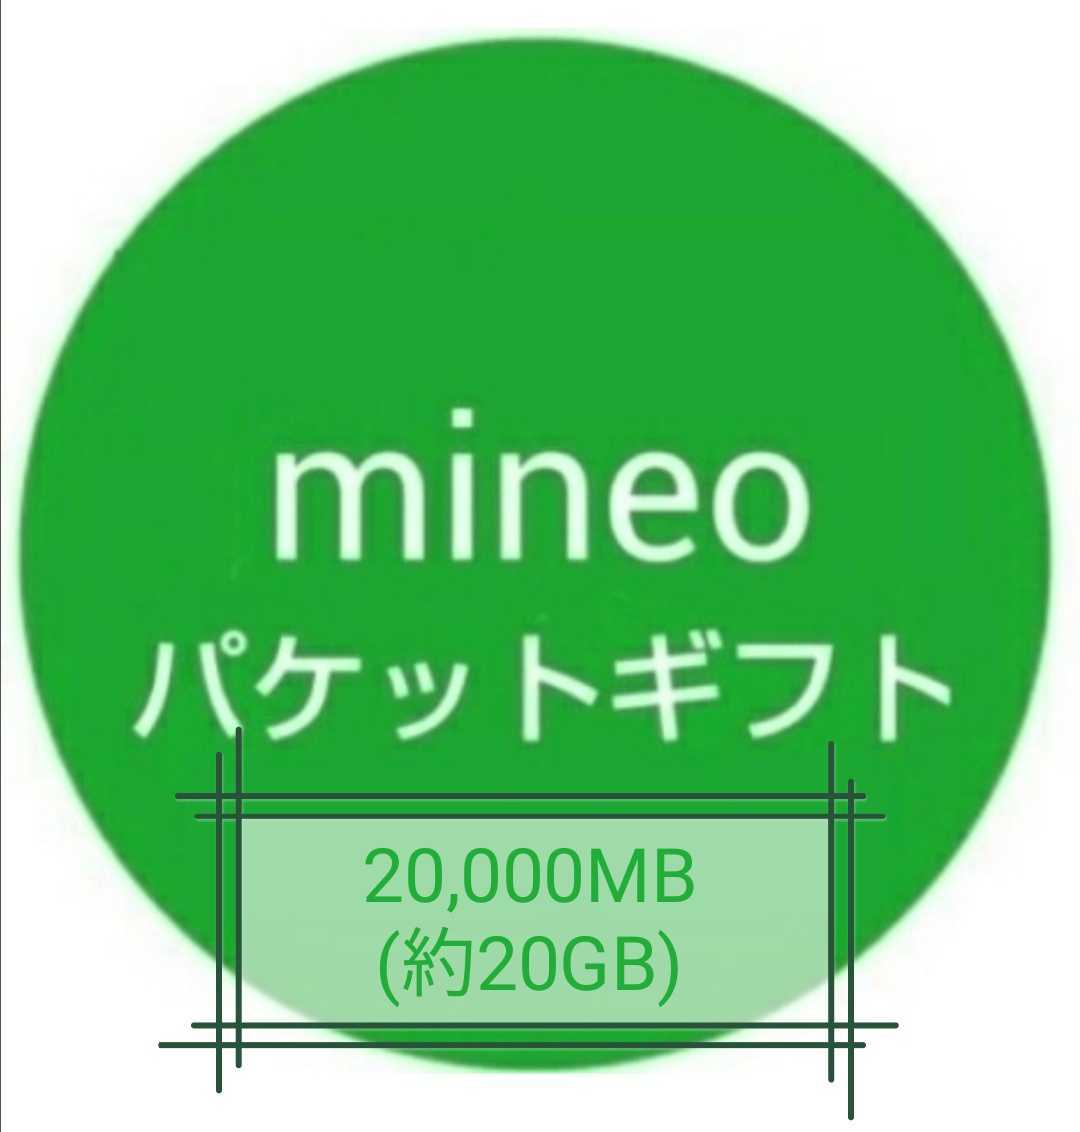 【迅速対応】mineo（マイネオ）パケットギフト 20000MB(約20GB)_画像1